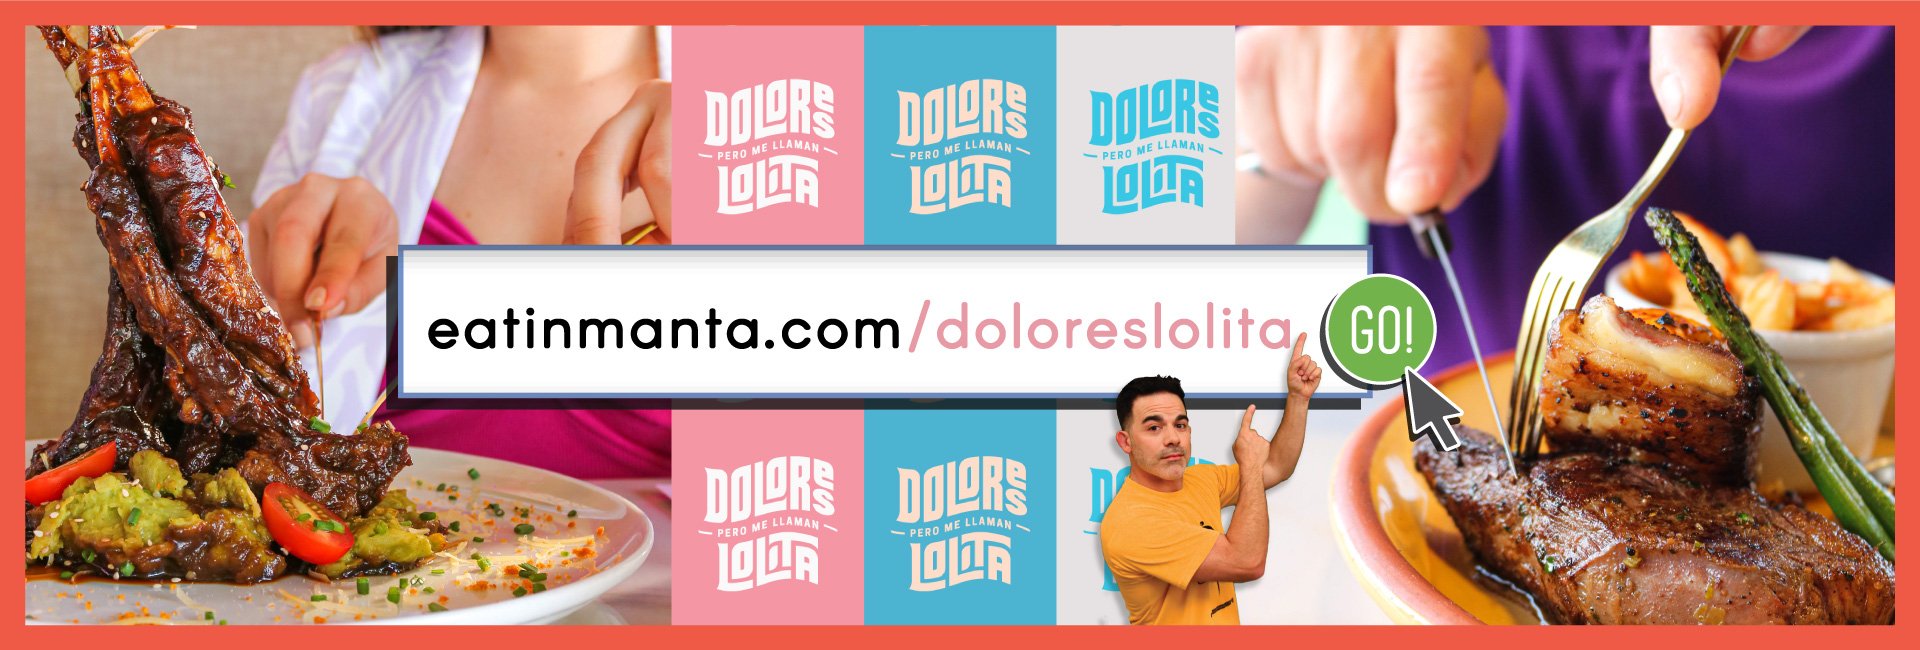 Dolores Lolita Manta .com banner